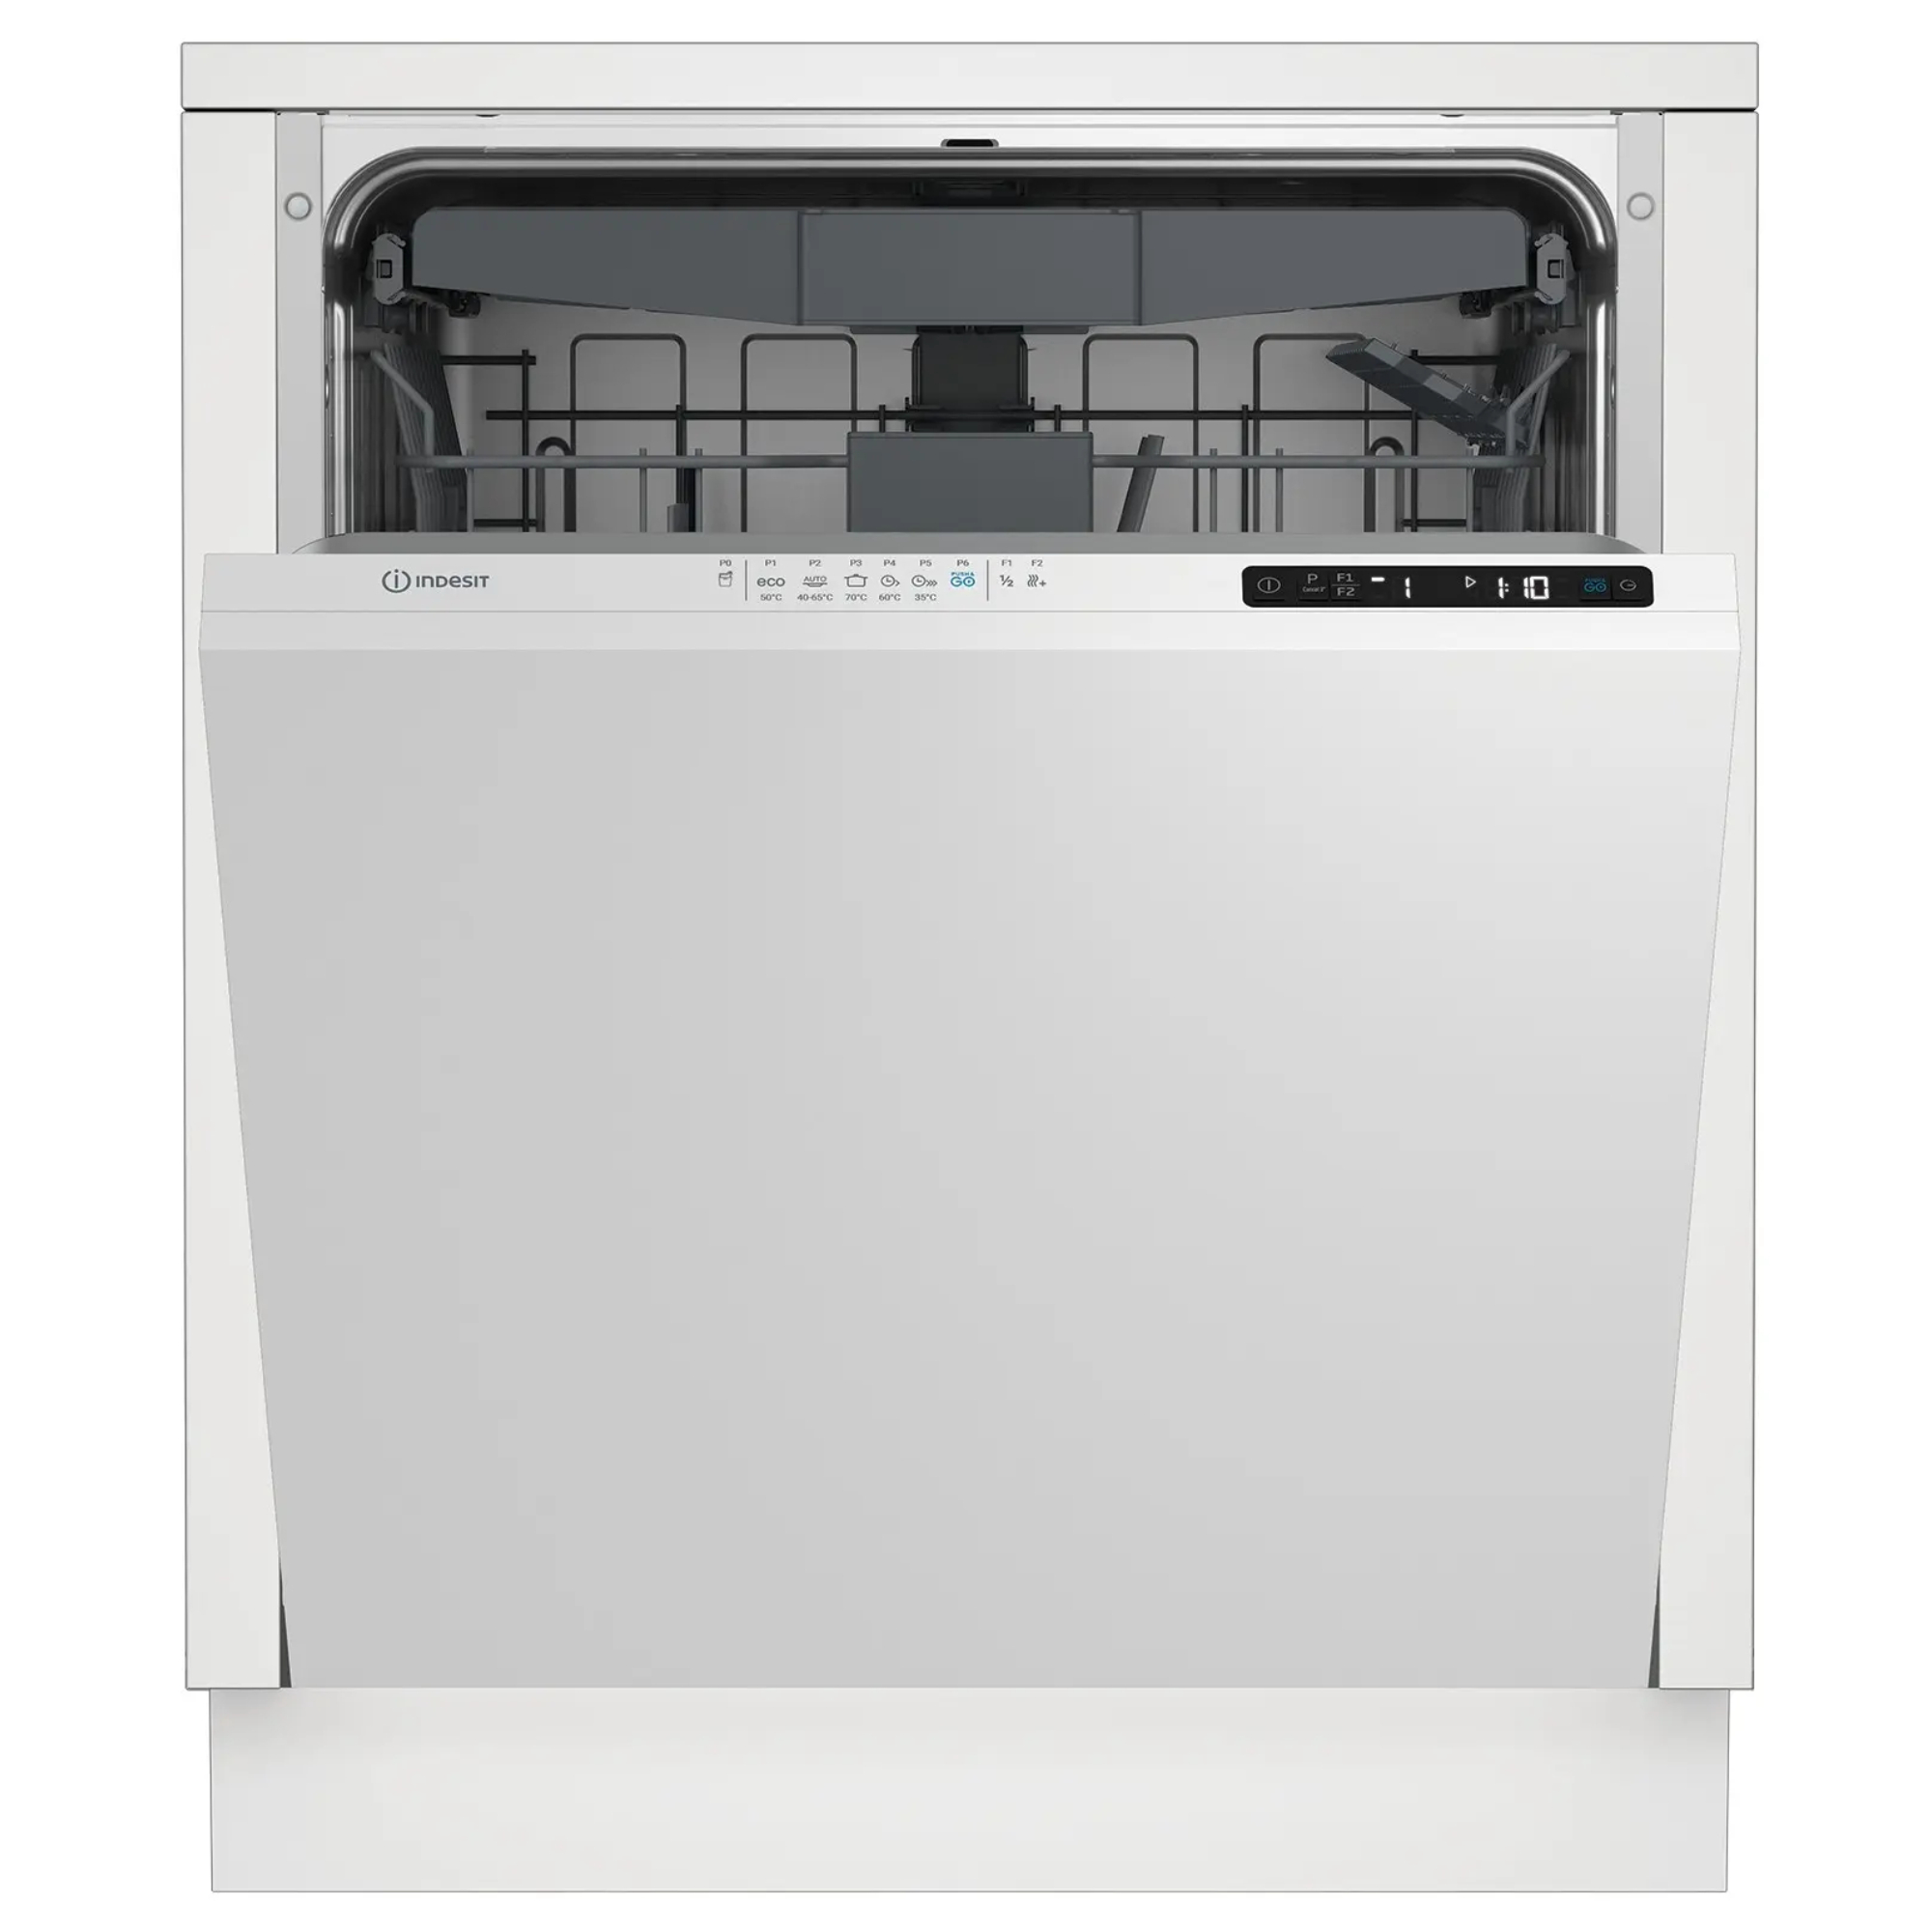 Встраиваемая посудомоечная машина Indesit DI 5C65 AED встраиваемая посудомоечная машина indesit di 4c68 ae